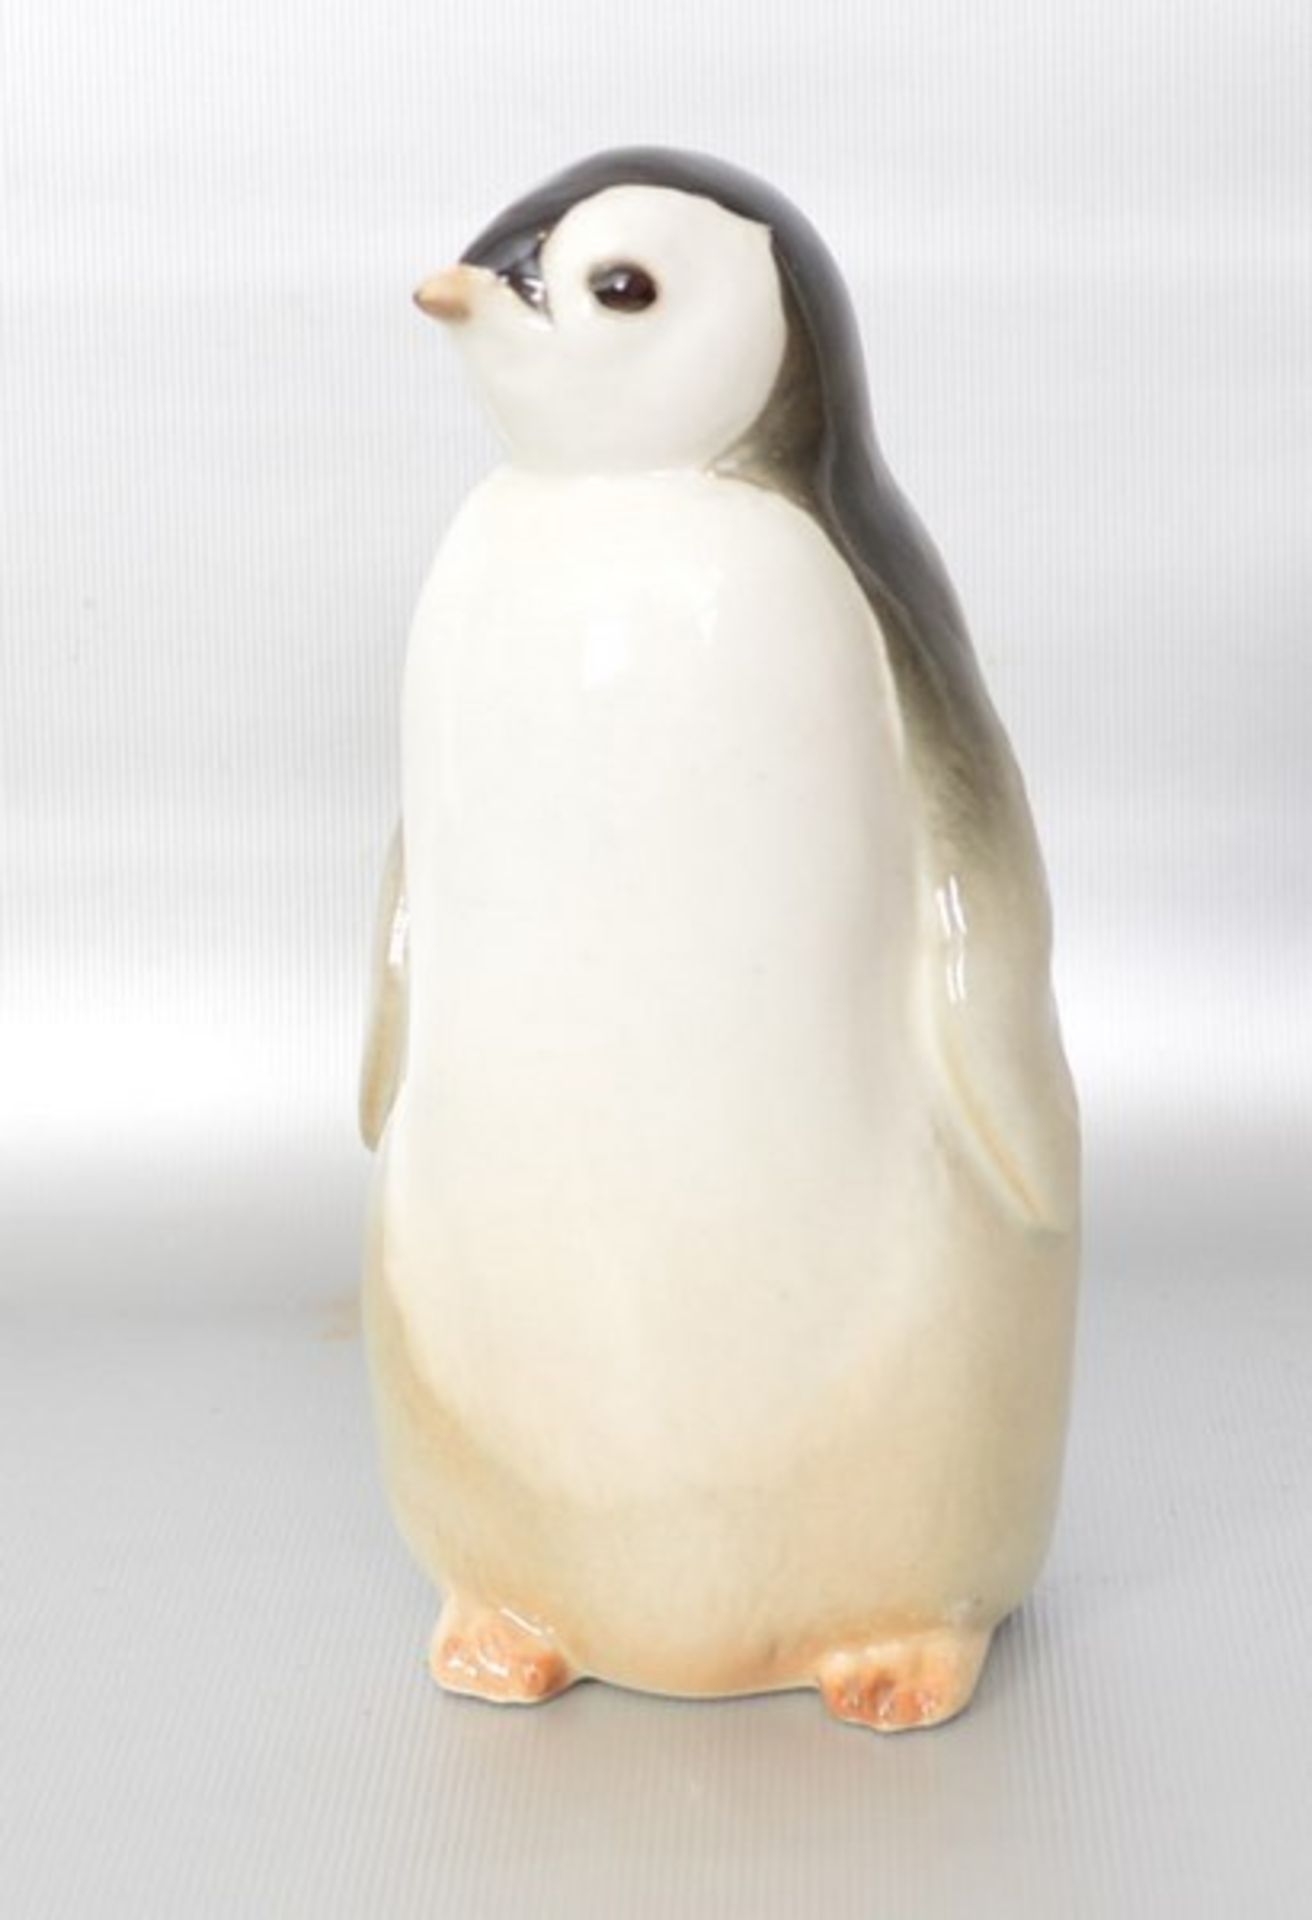 Pinguin bunt bemalt, H 15 cm, FM